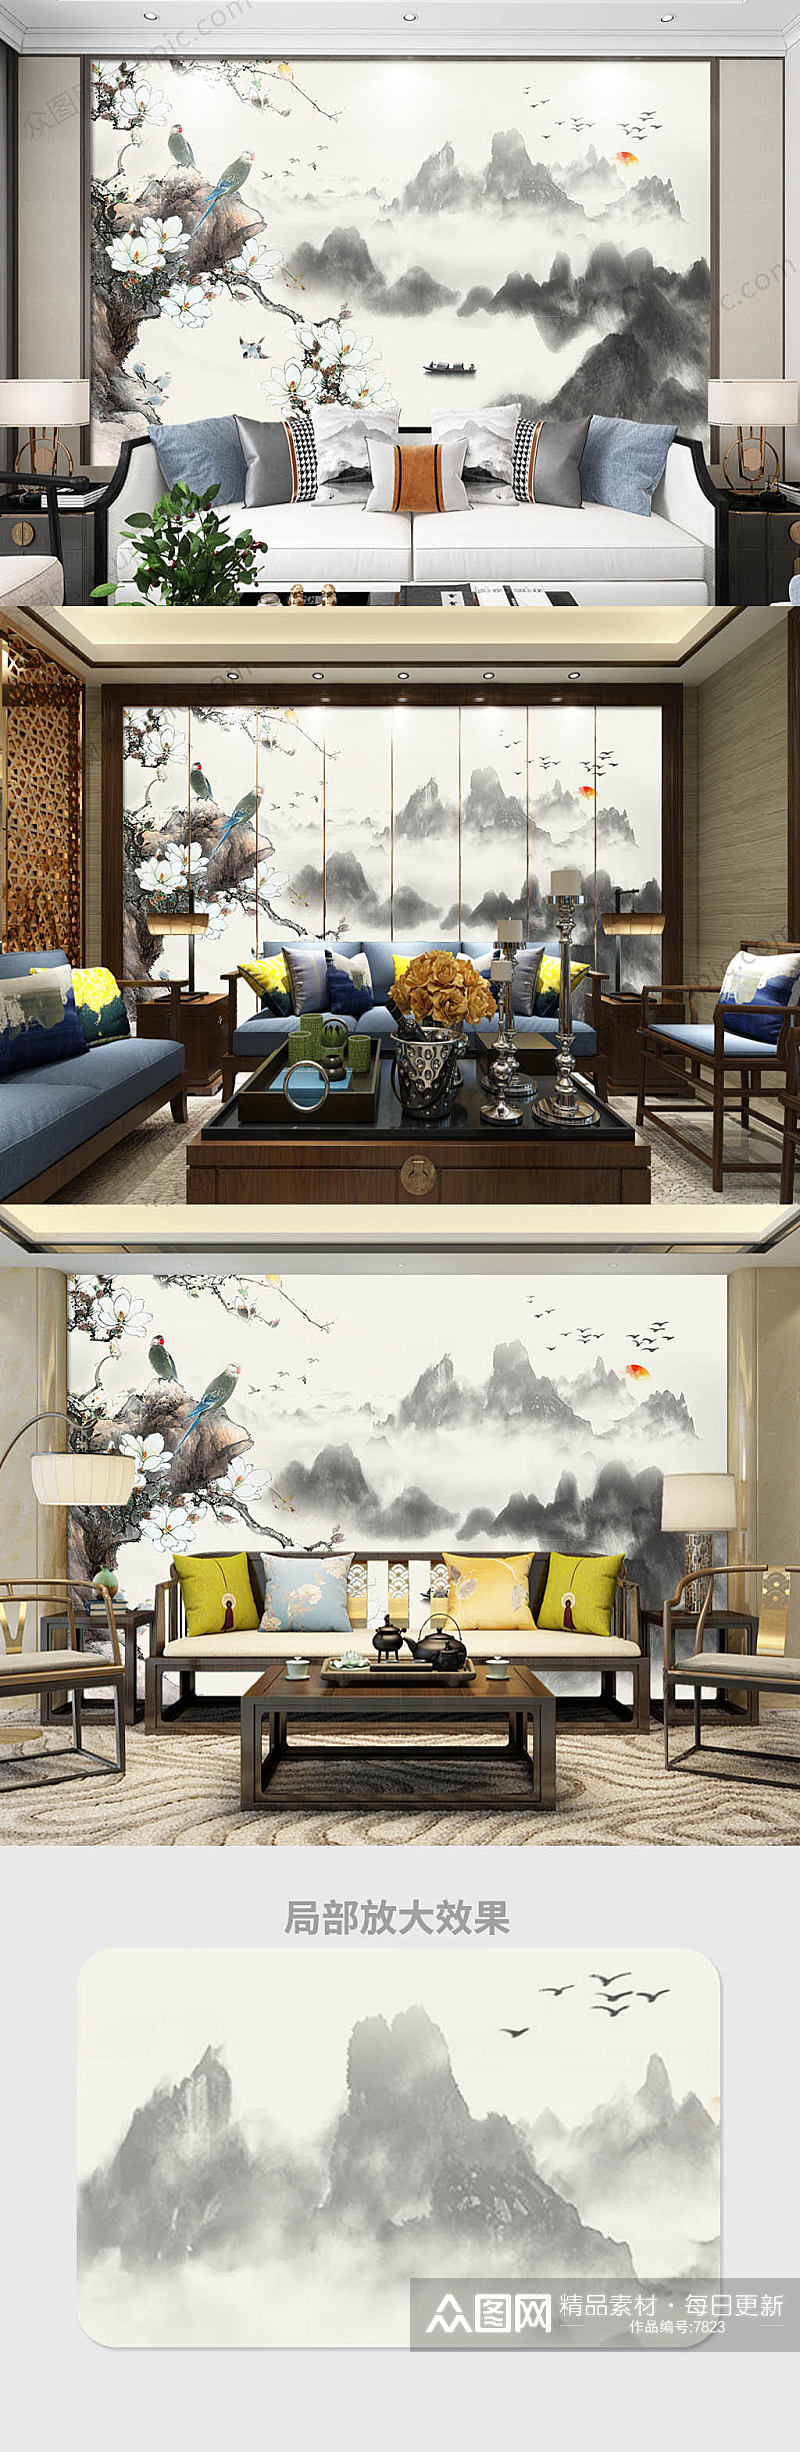 大气黄色中式沙发背景墙装饰画素材